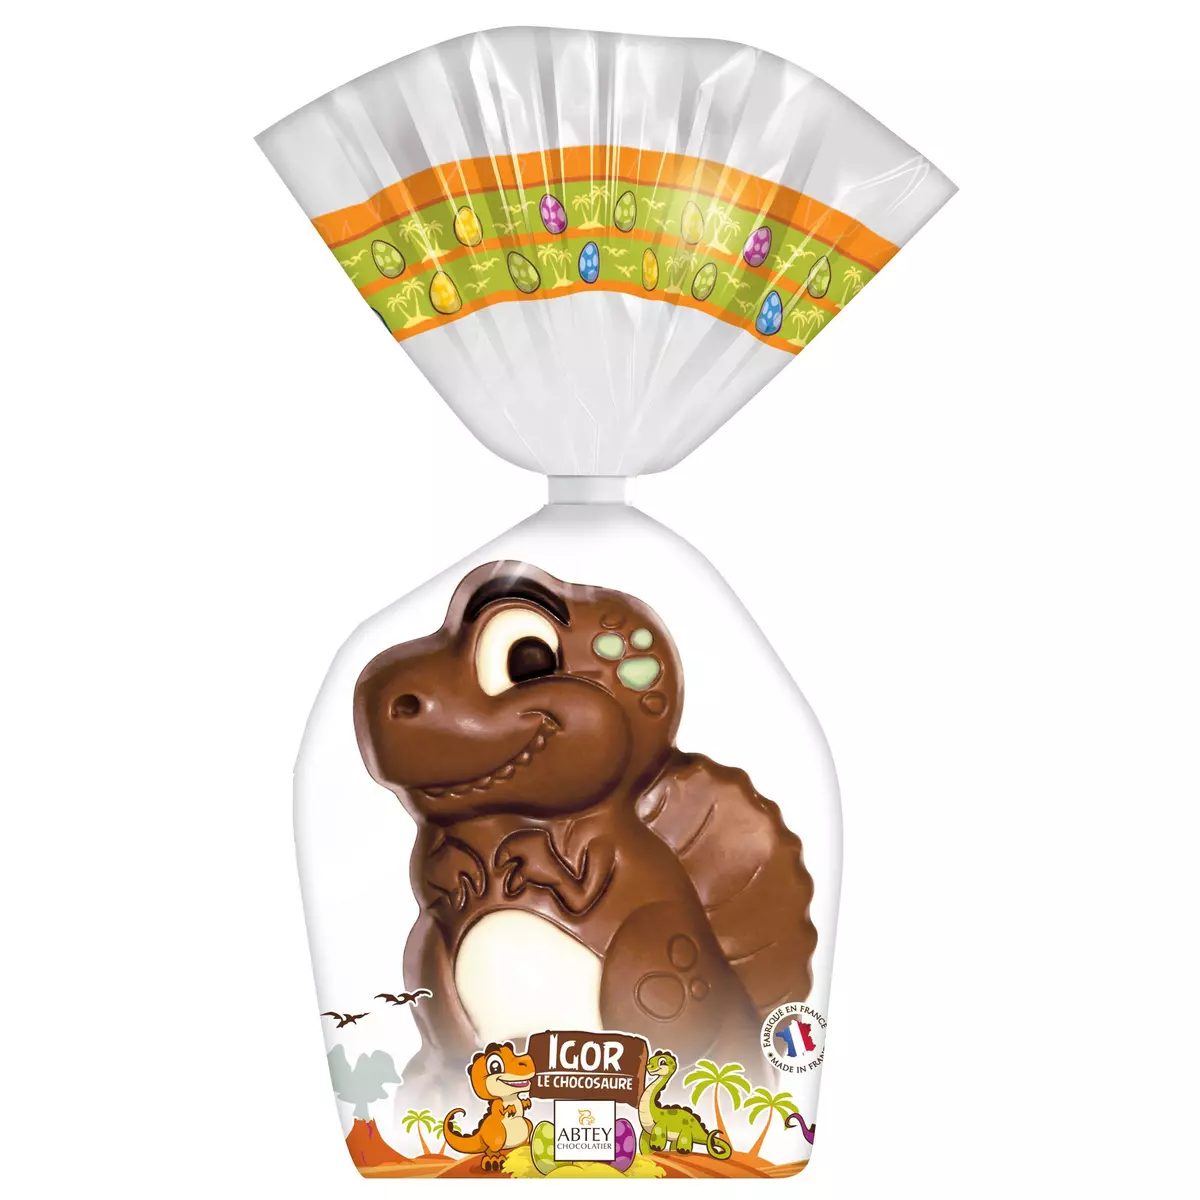 ABTEY Igor le dinosaure moulage au chocolat au lait 1 pièce 140g